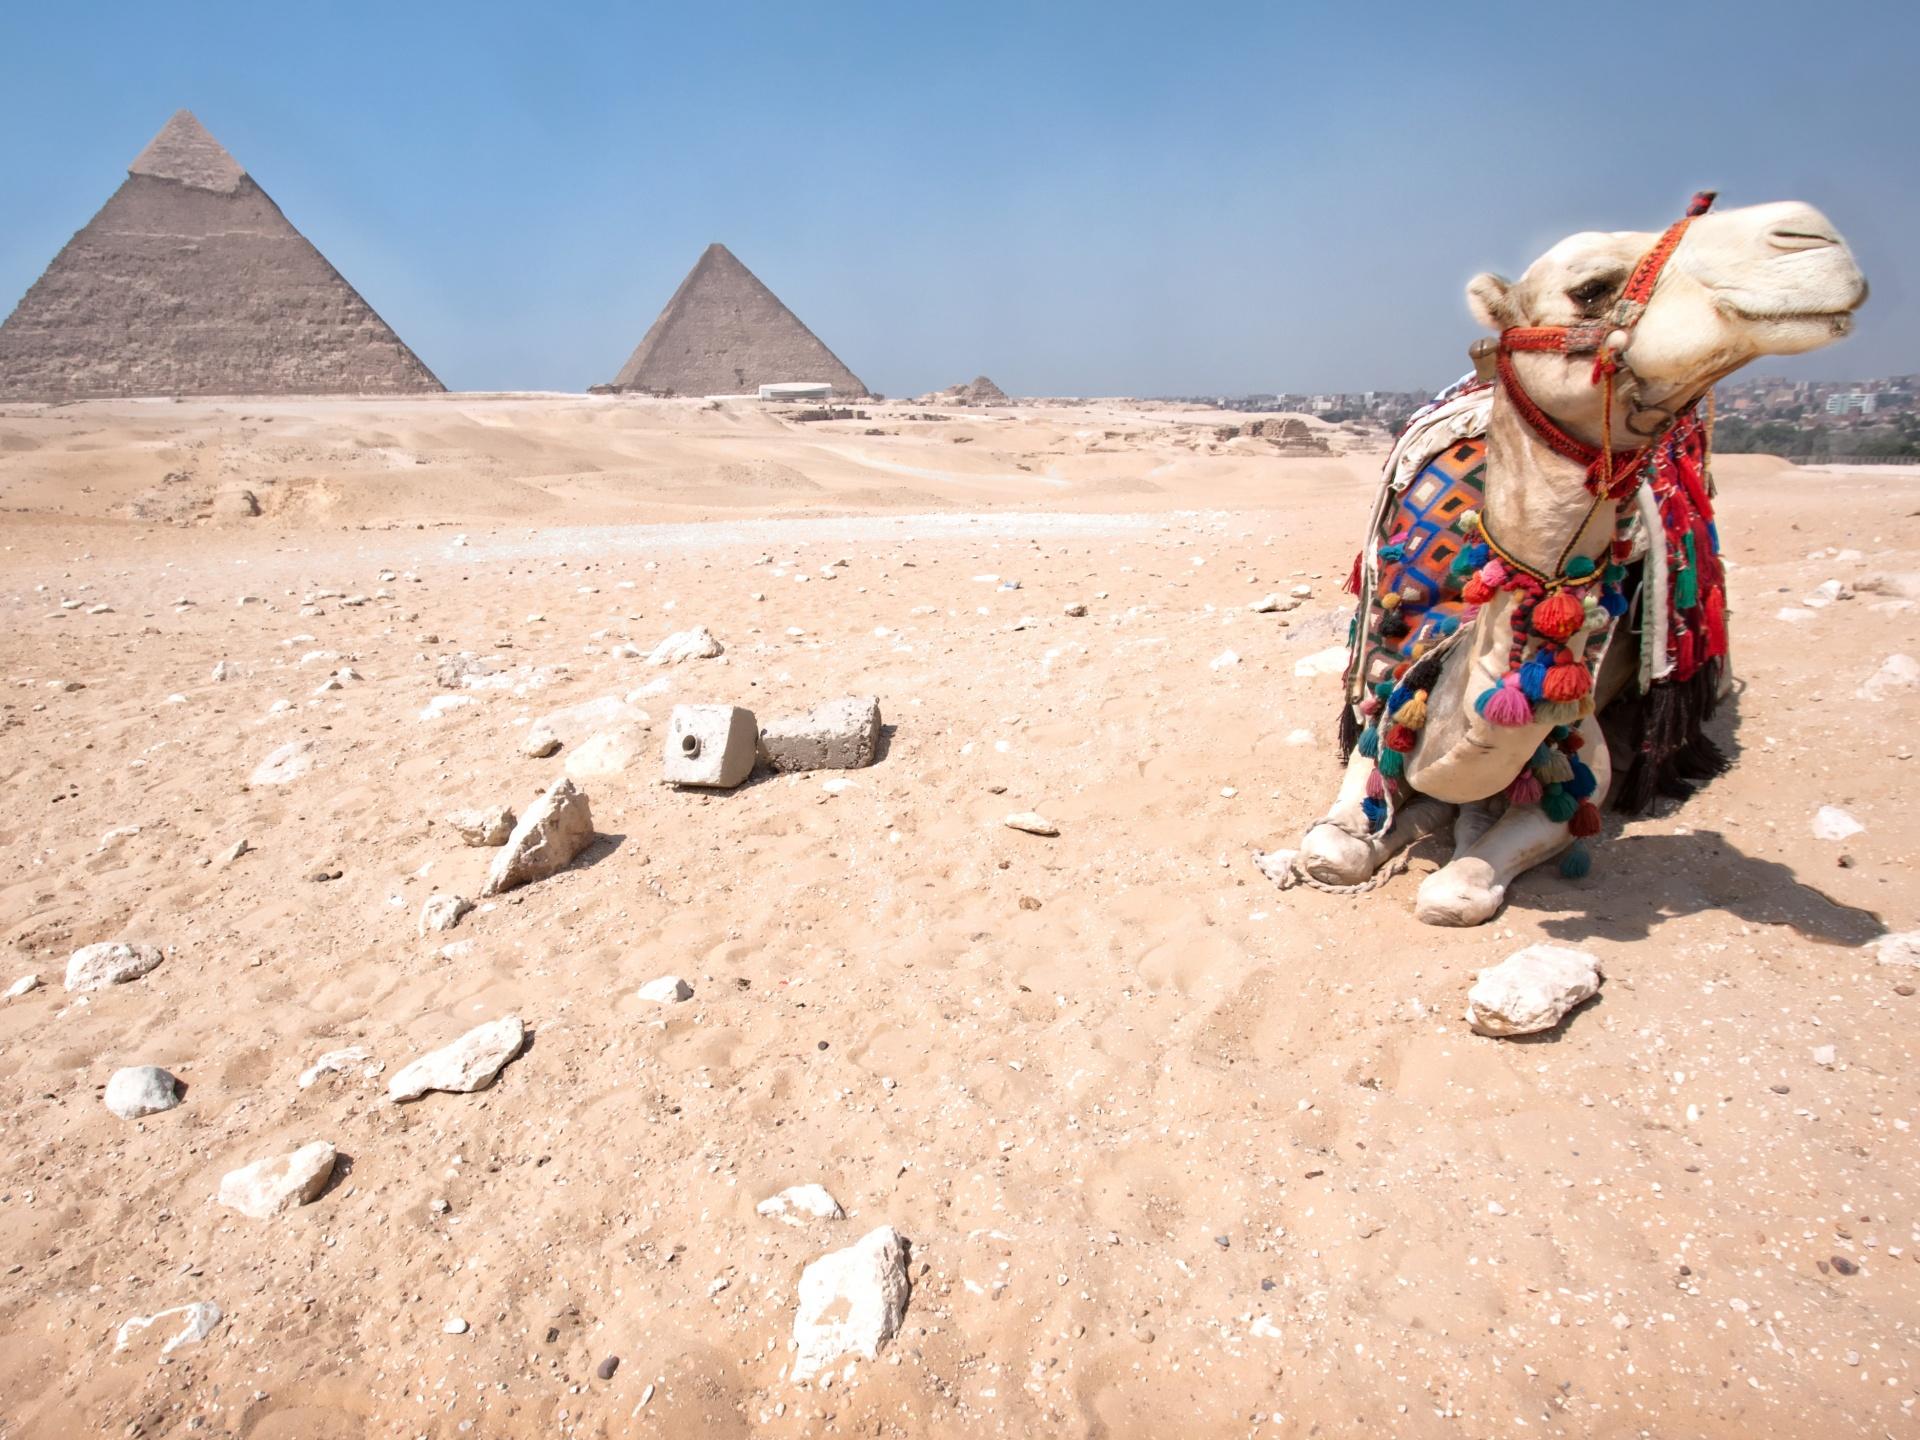 Pyramids of Giza and camel Wallpaperx1440